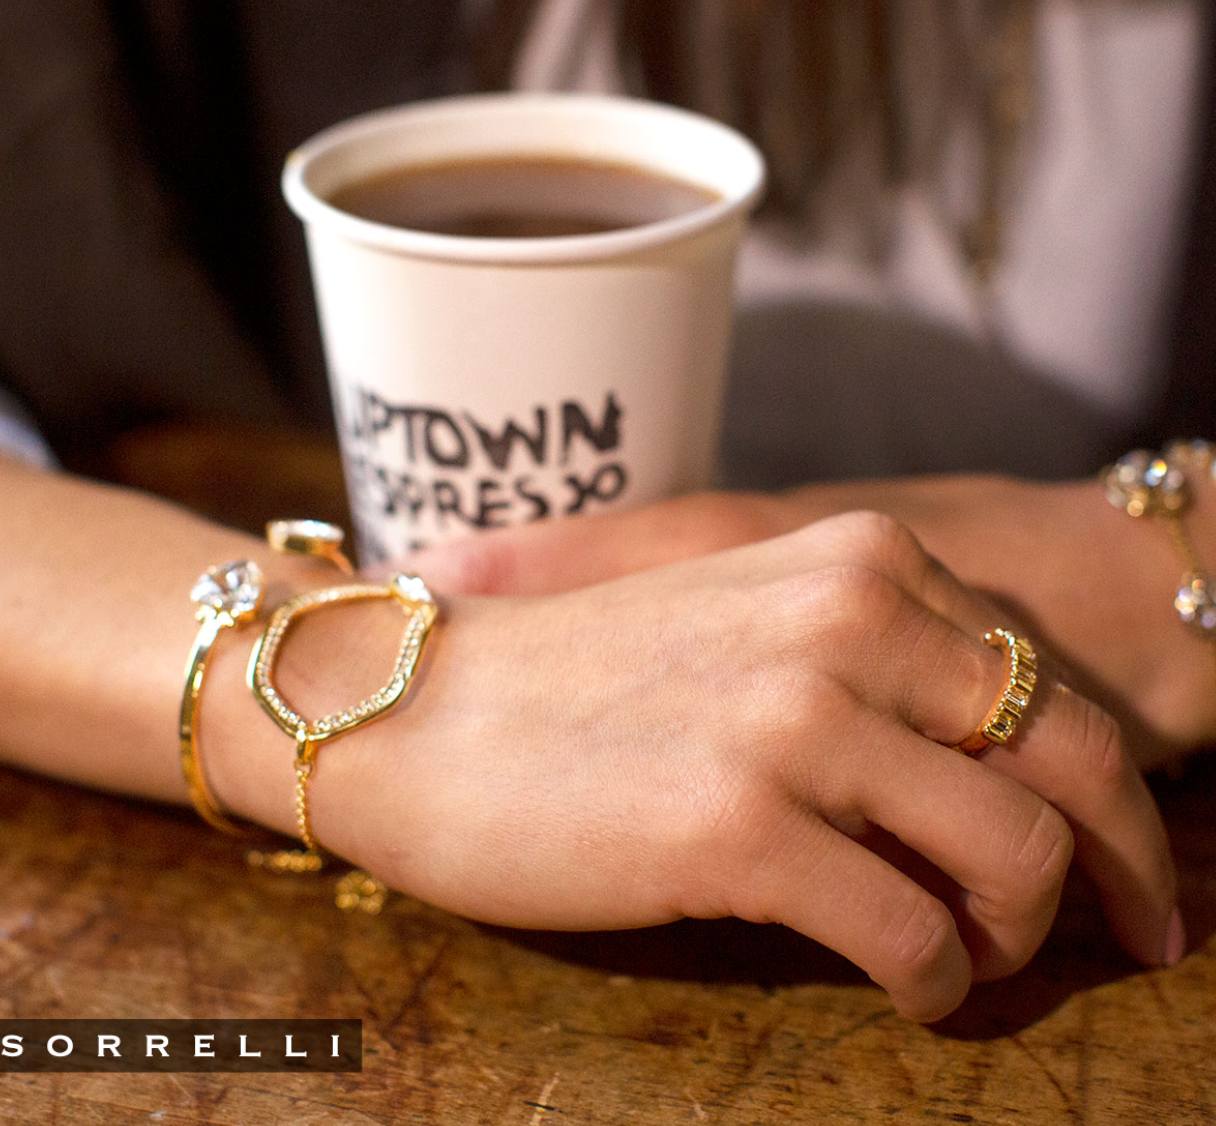 Sorrelli- Perfectly Pretty Cuff Bracelet in Crystal